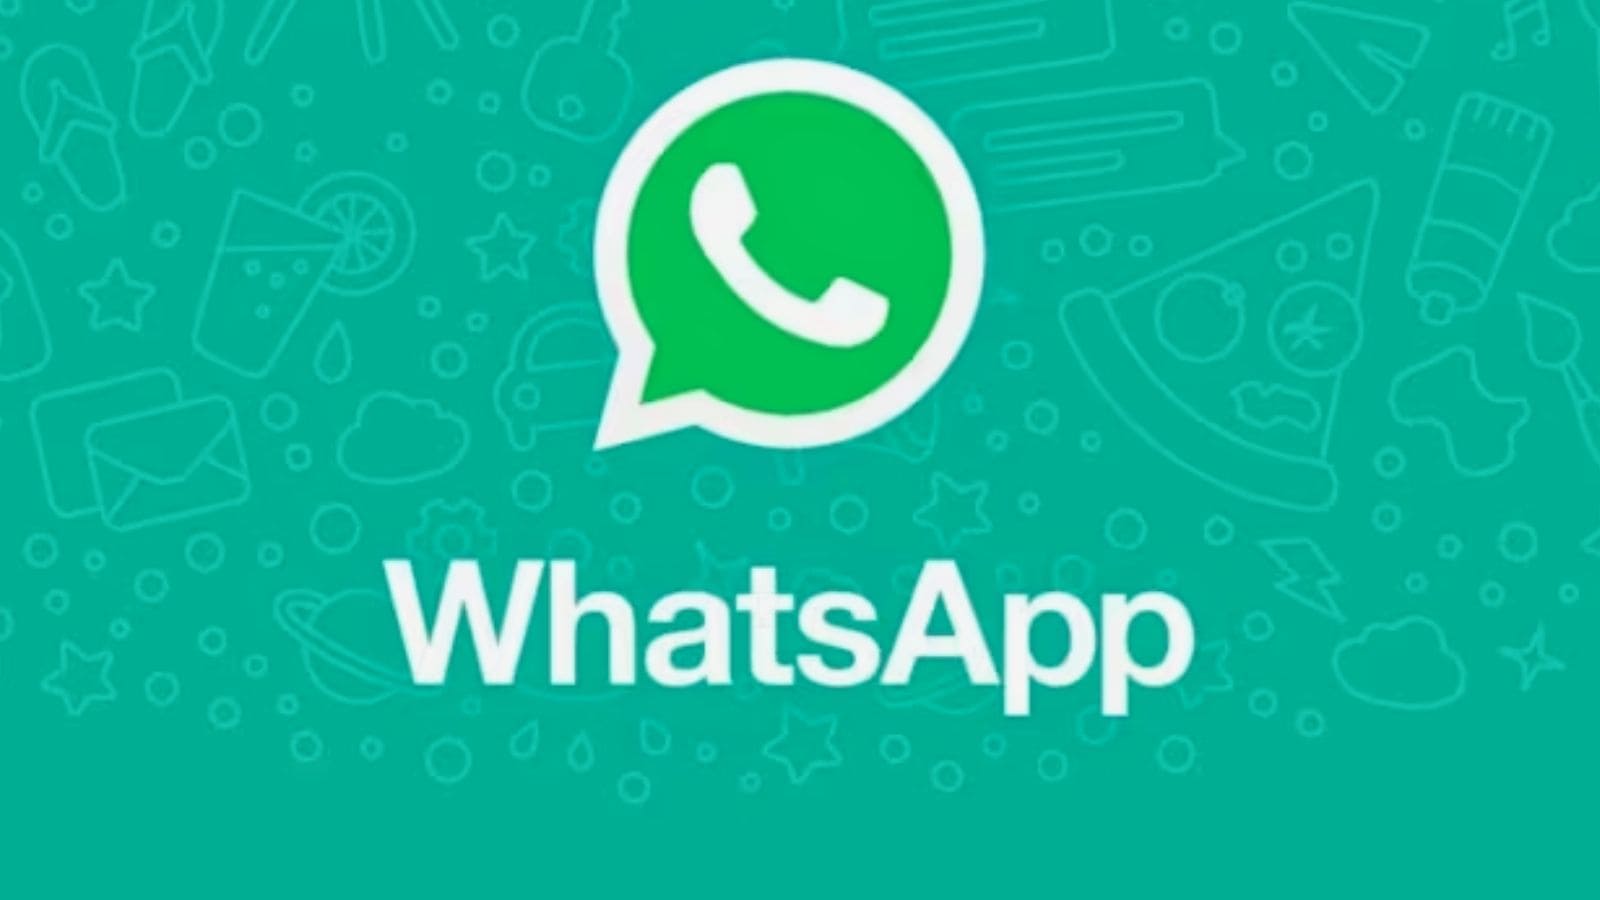 Whatsapp: la funzione per non farsi scoprire in chat